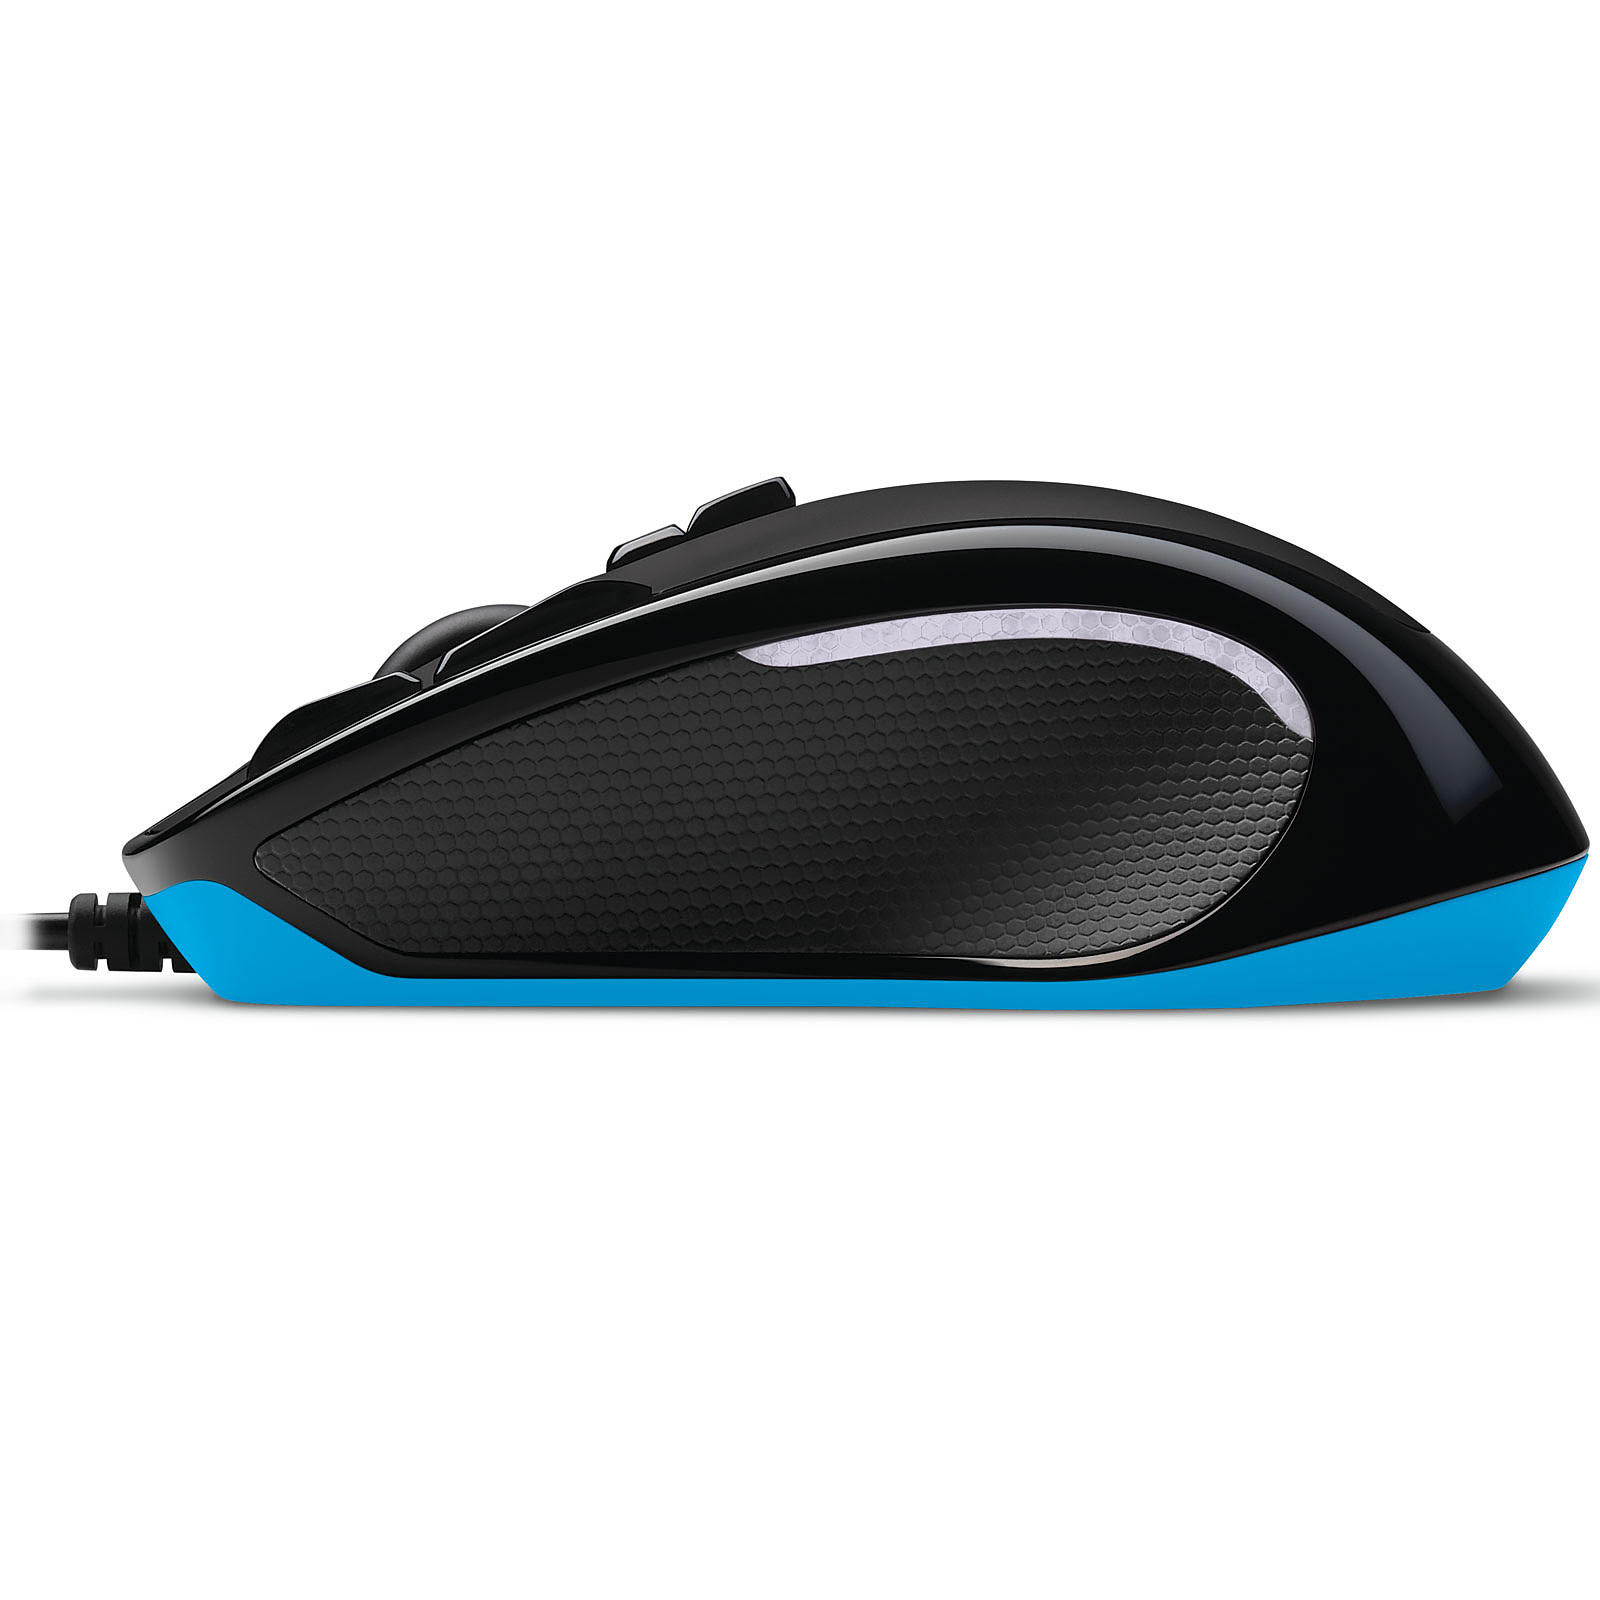  G300s Gaming Mouse (910-004346 --) - Achat / Vente Souris PC sur Picata.fr - 3